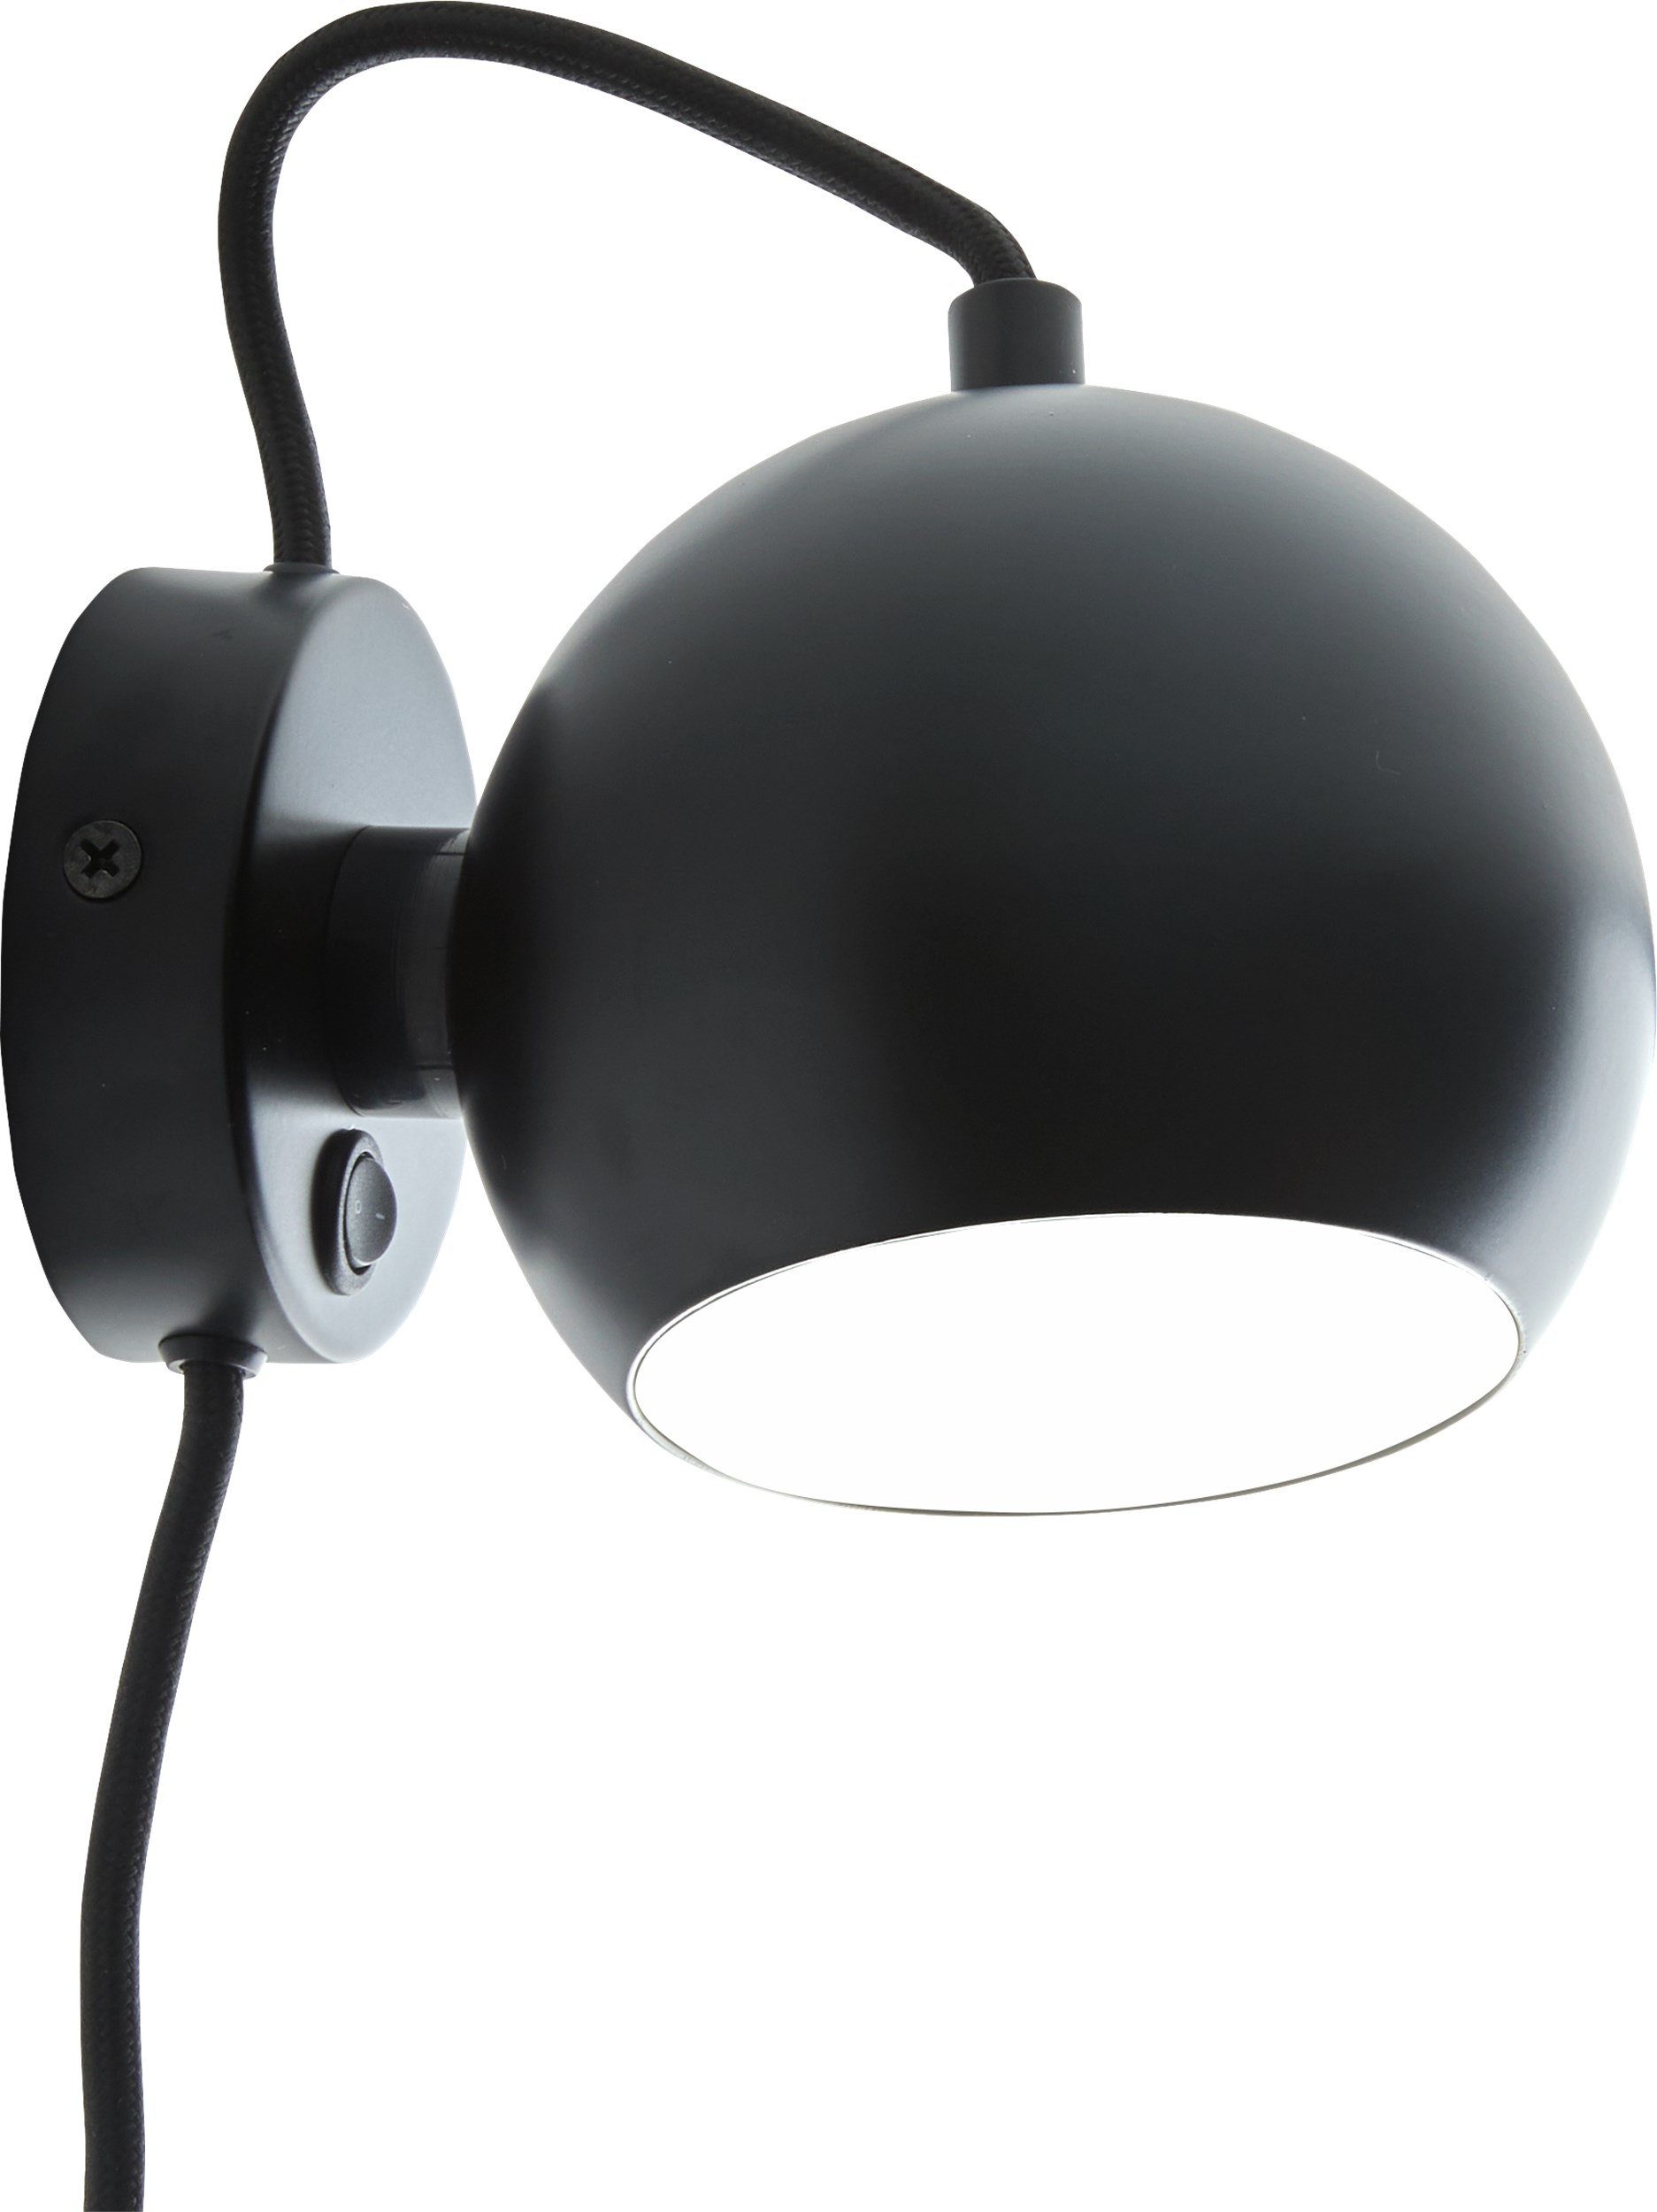 Ball Vägglampa 12 cm - Matt svart metallskärm, svart textilsladd och med strömbrytare på basen